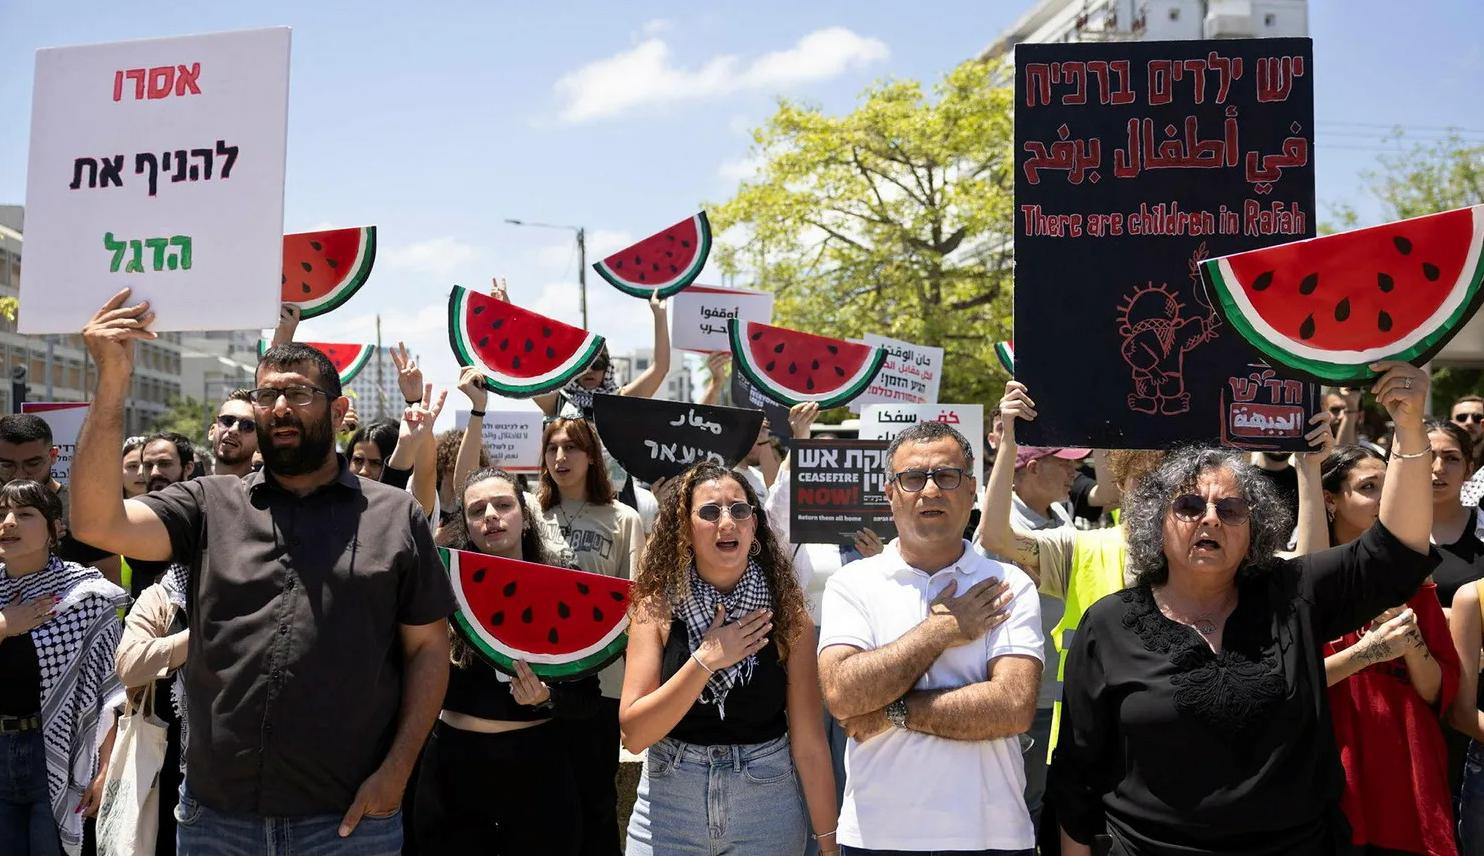 ناشطون مؤيدون للفلسطينيين في ذكرى النكبة أمام مدخل جامعة تل أبيب بعد منعهم من رفع العلم الفلسطيني (عن "هآرتس") 